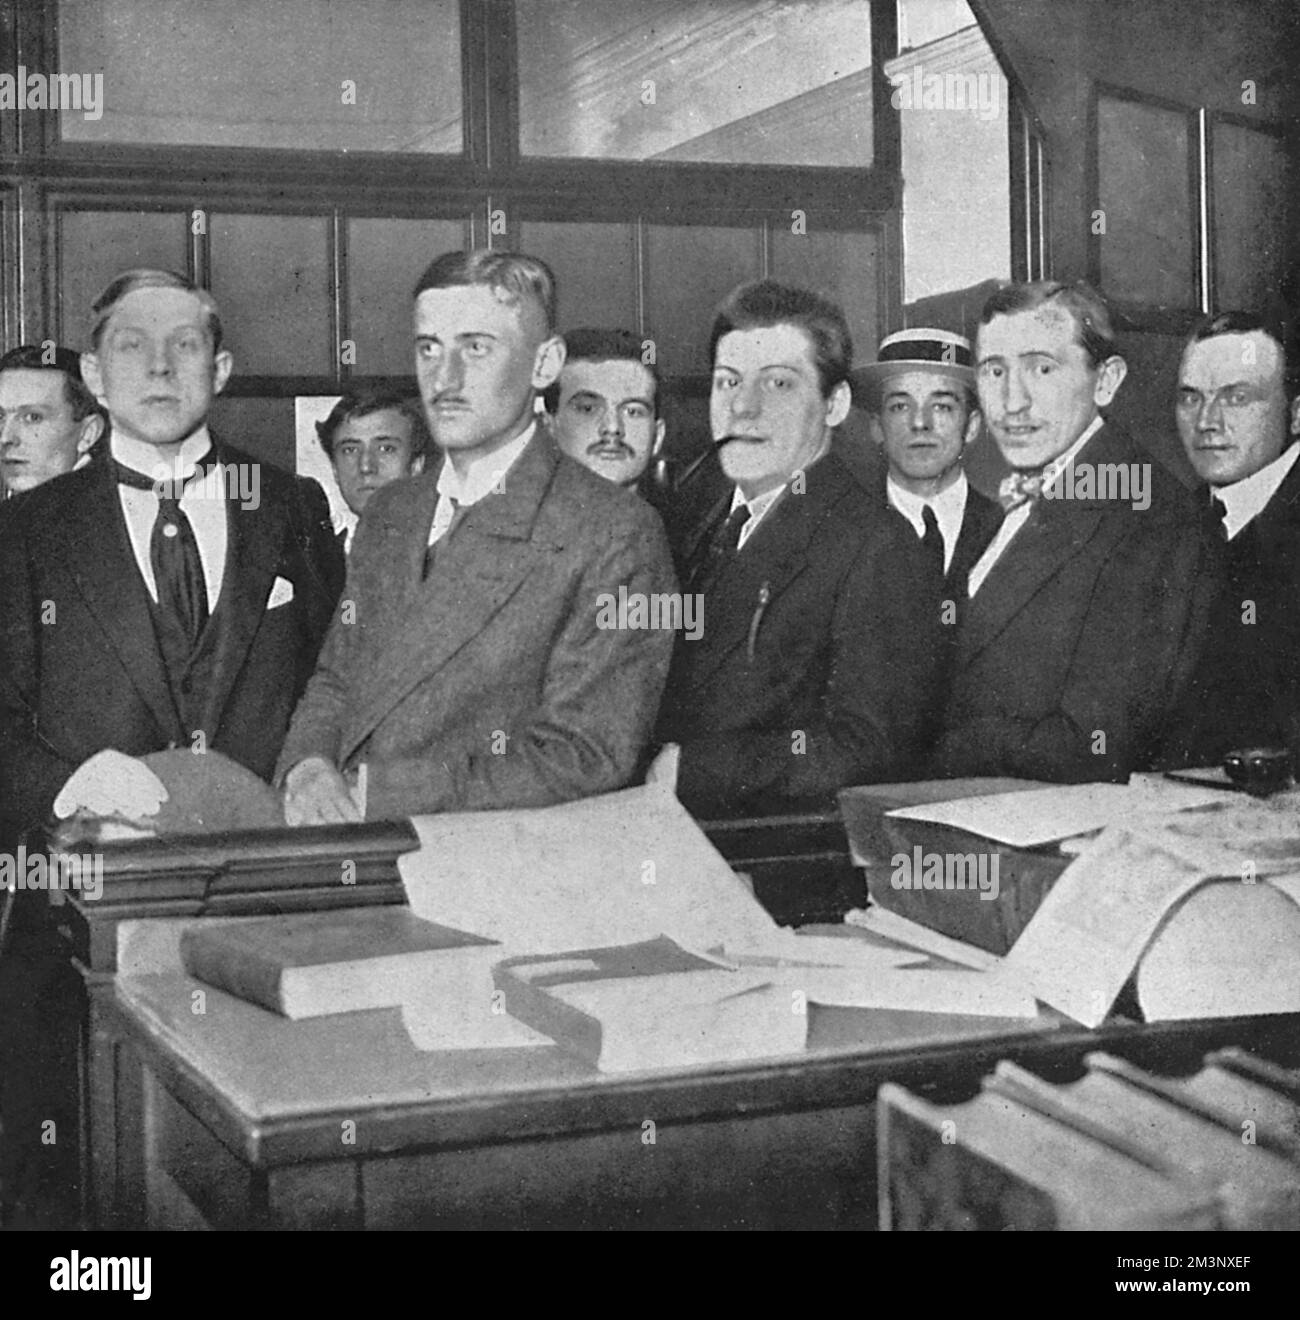 Al Consolato Austro-Ungarico di Londra, i Riservisti austriaci rispondono alla chiamata alle armi dopo lo scoppio della guerra Data: Agosto 1914 Foto Stock